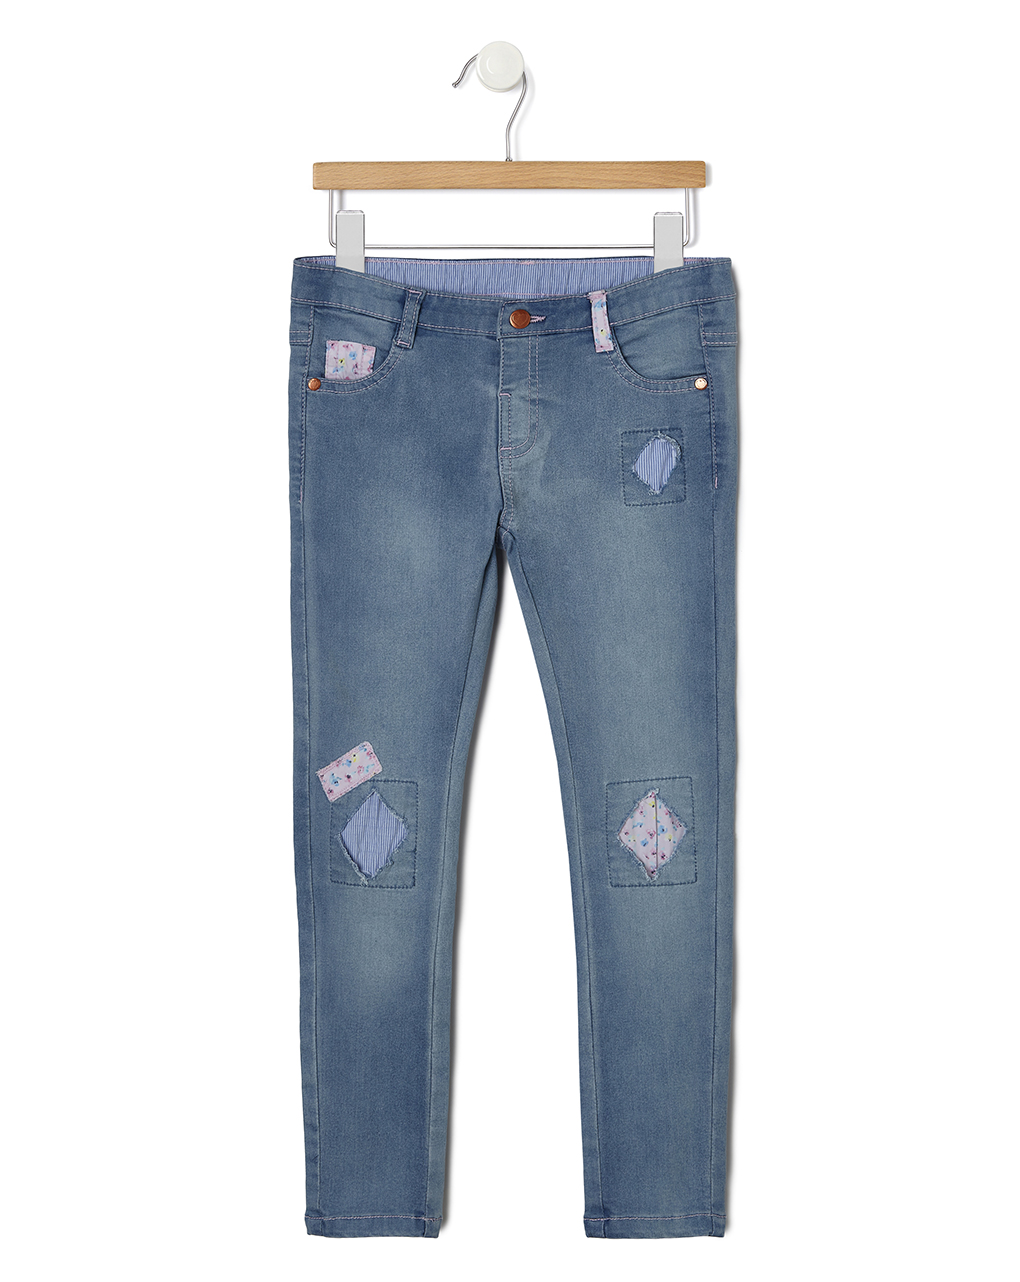 τζιν παντελόνι με patch μεγ.8-9/9-10 ετών για κορίτσι - Prénatal